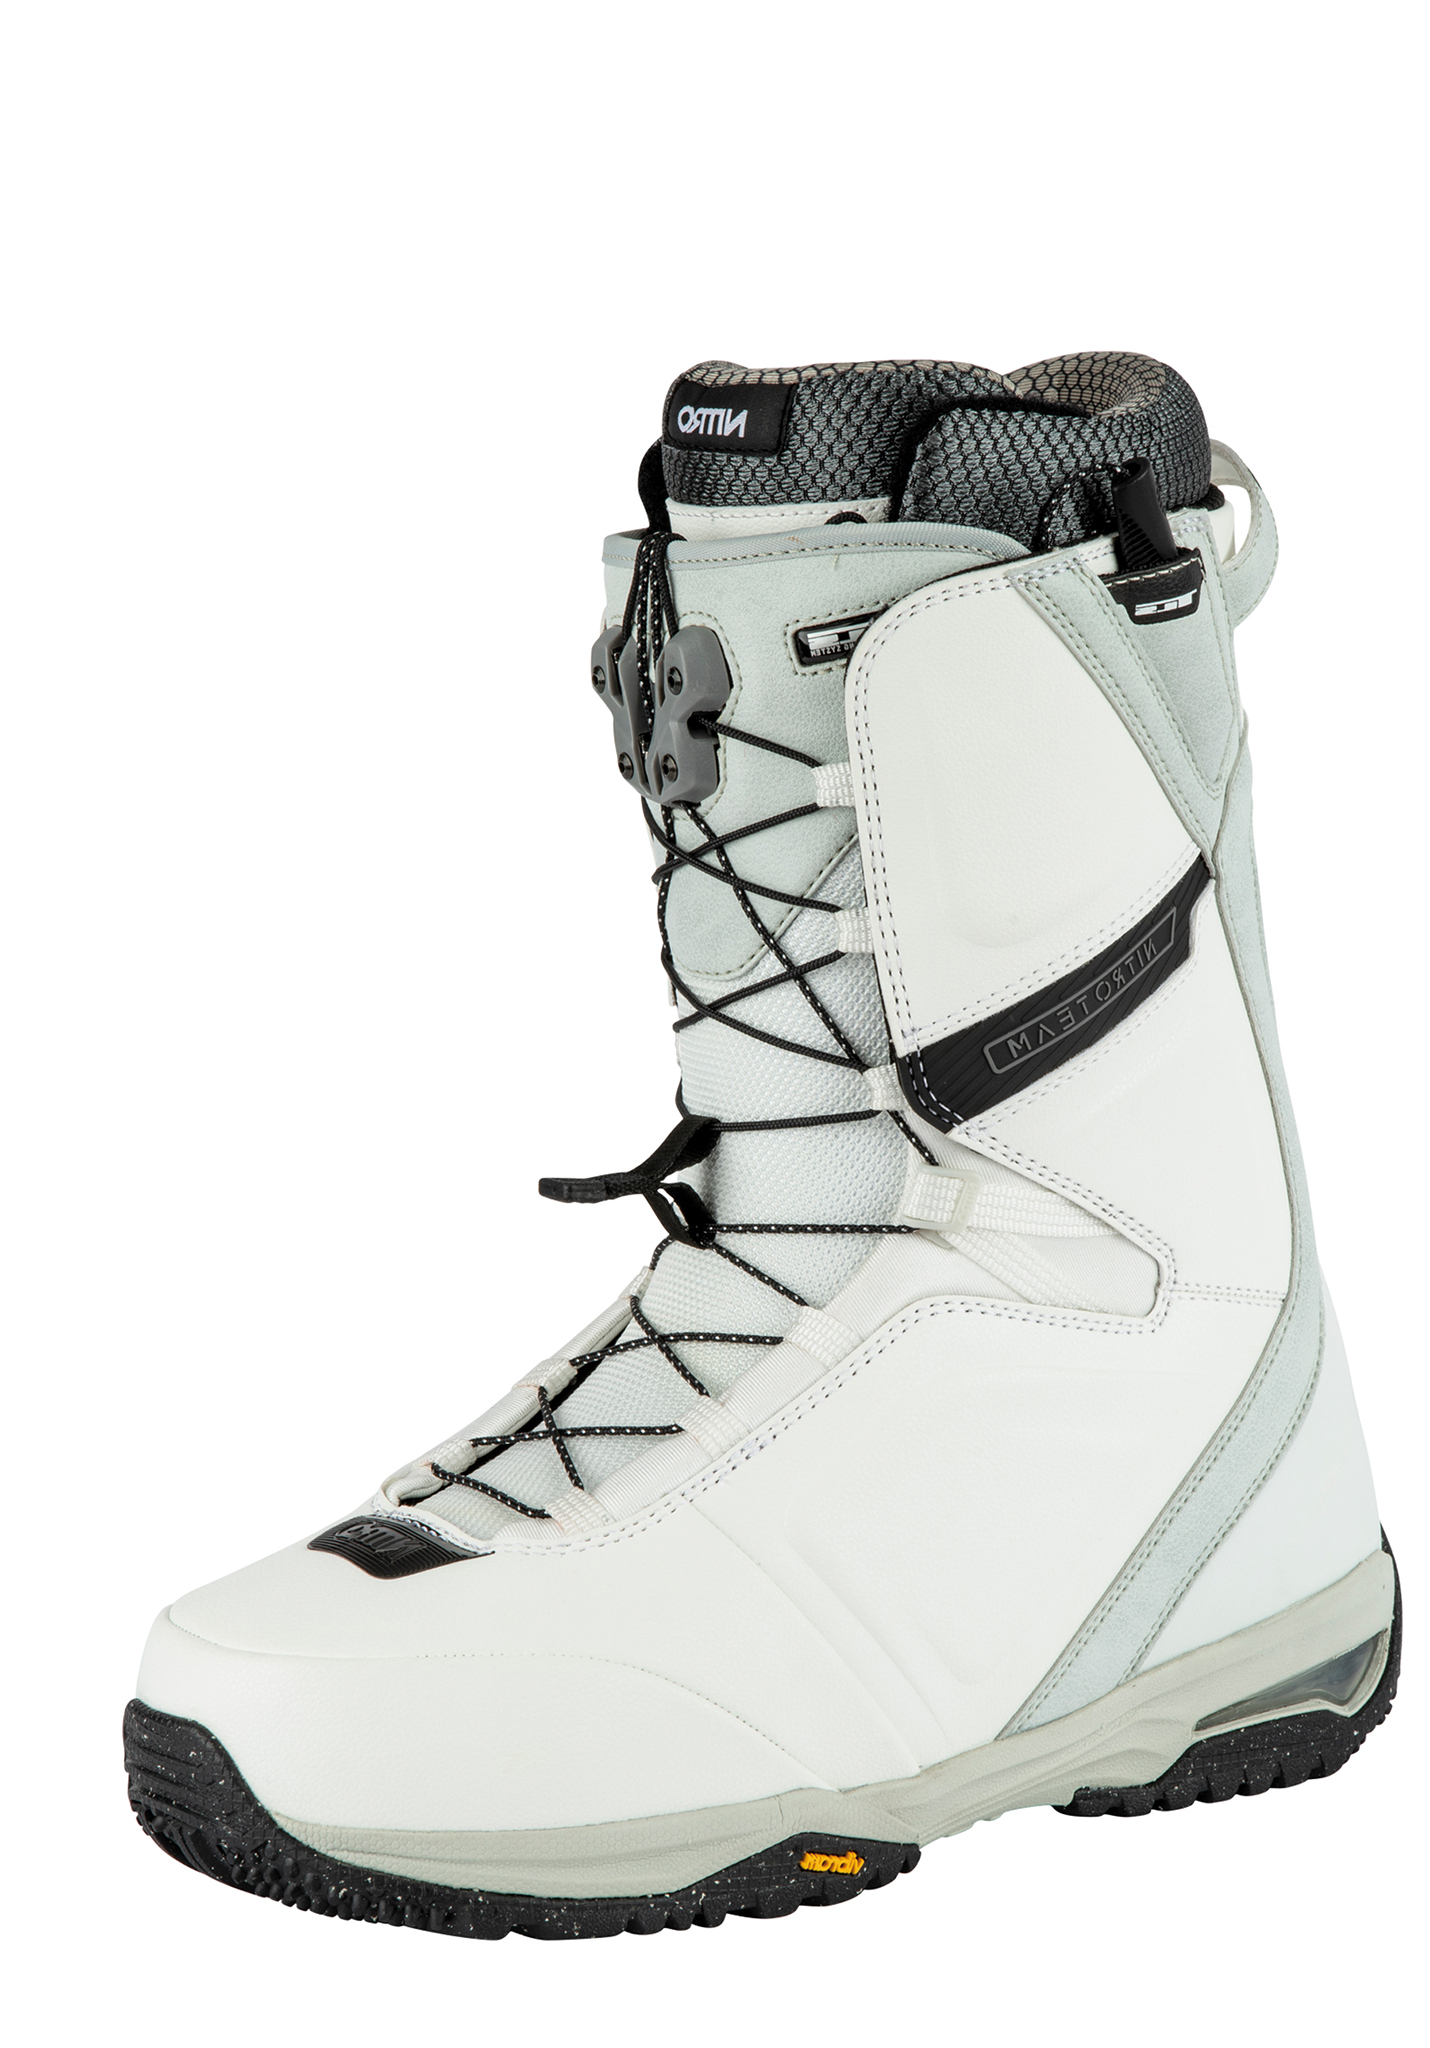 Nitro Team TLS All Mountain Snowboard Boots white-black 44 2/3